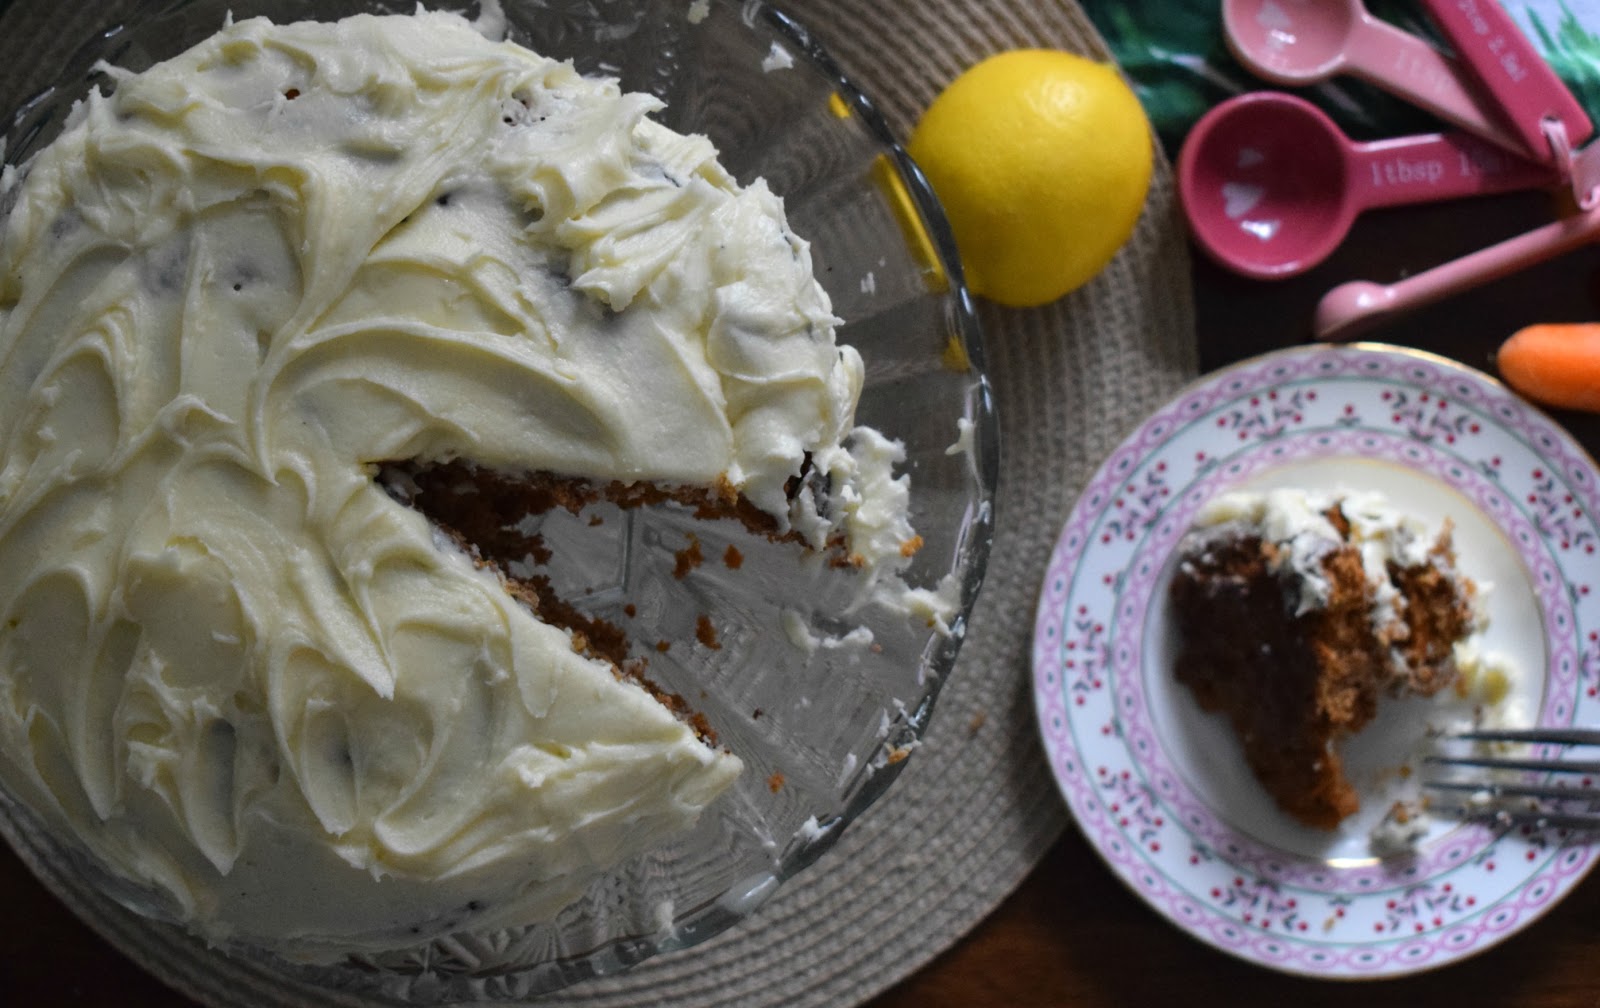 Vegan carrot cake with lemon buttercream recipe